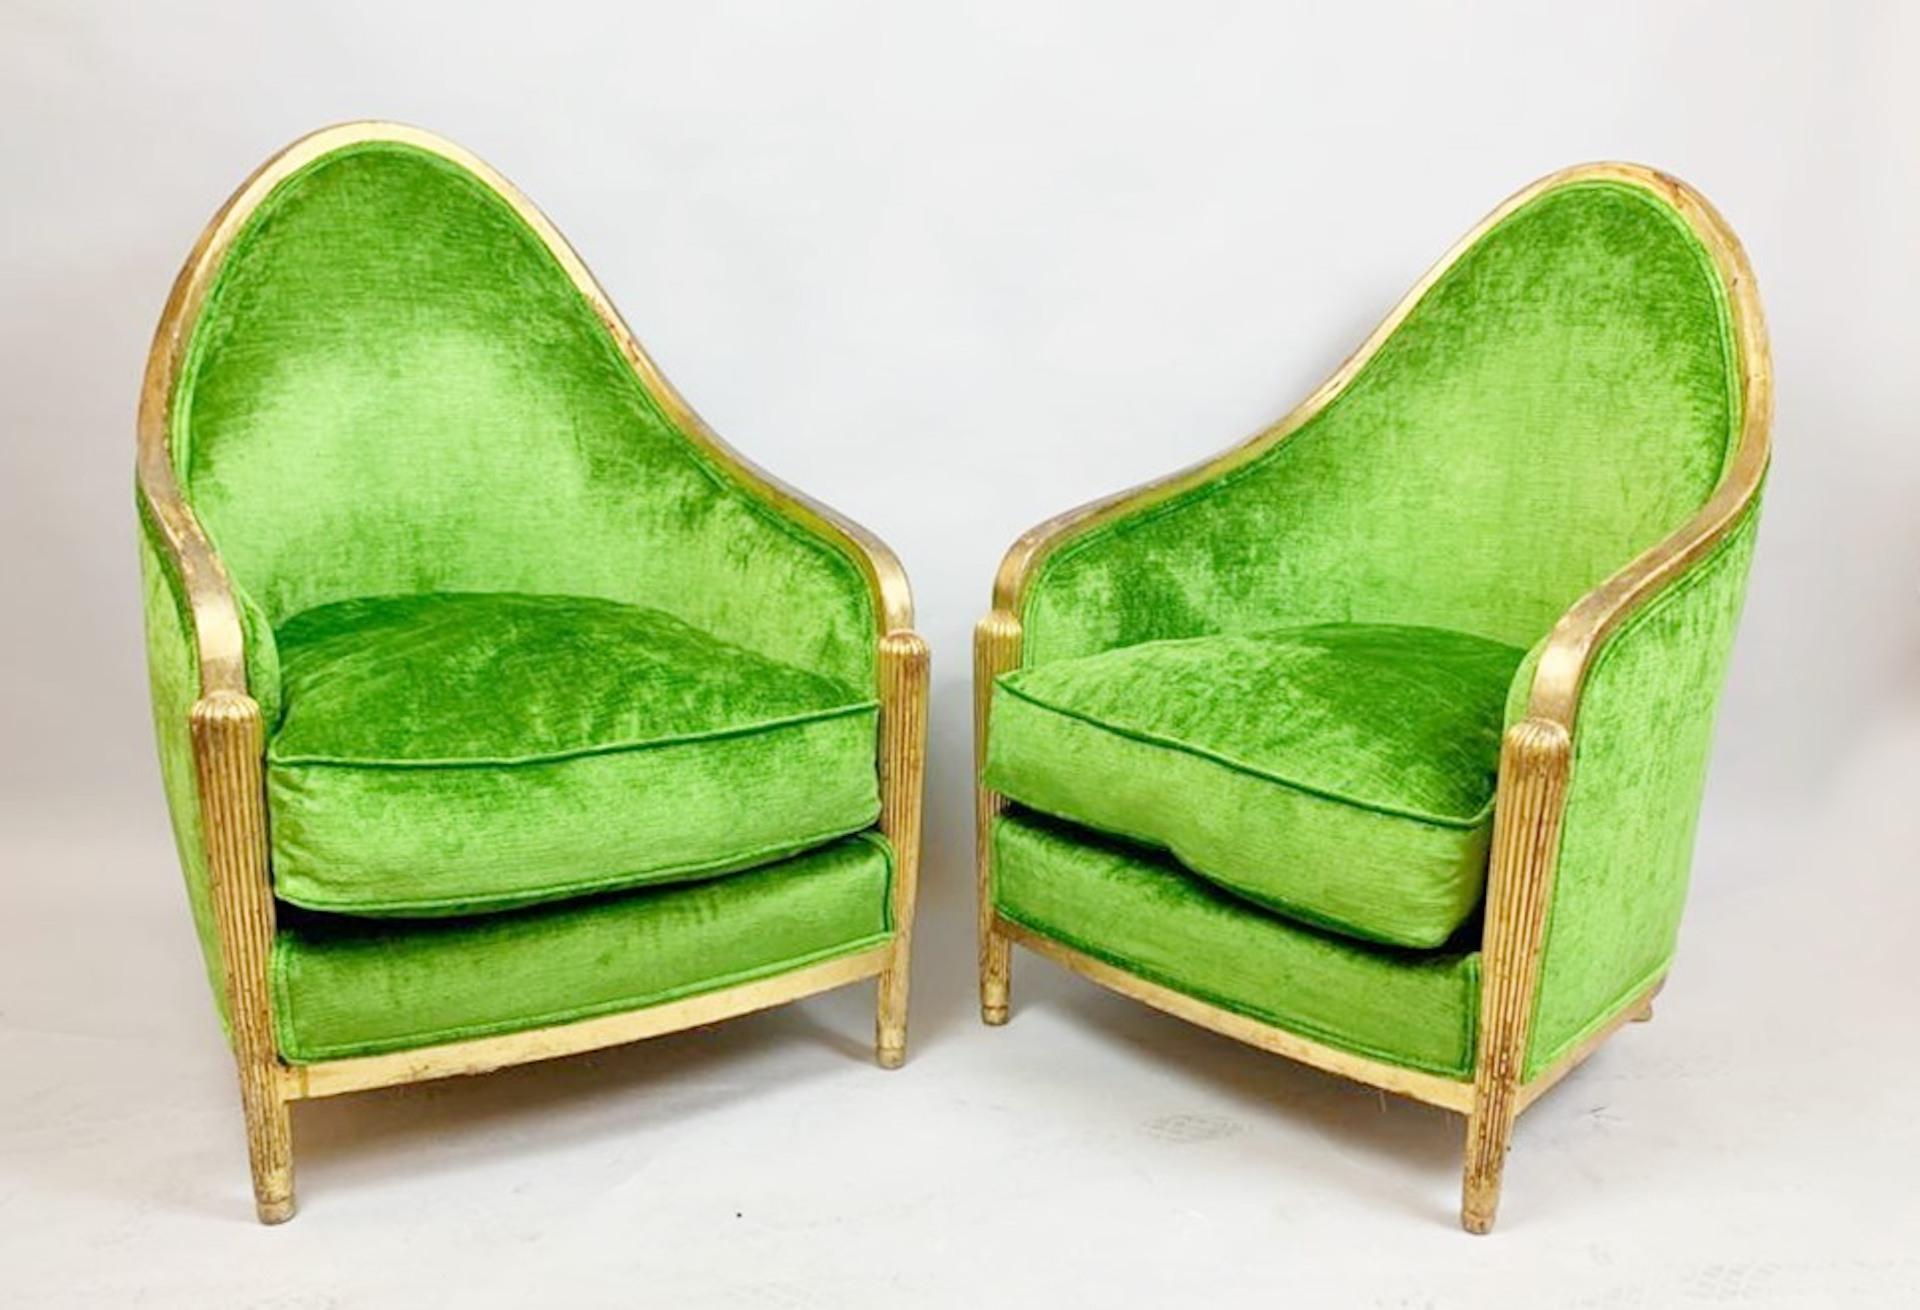 Pair of green velvet armchairs, Art Deco, France
New Upholstery.